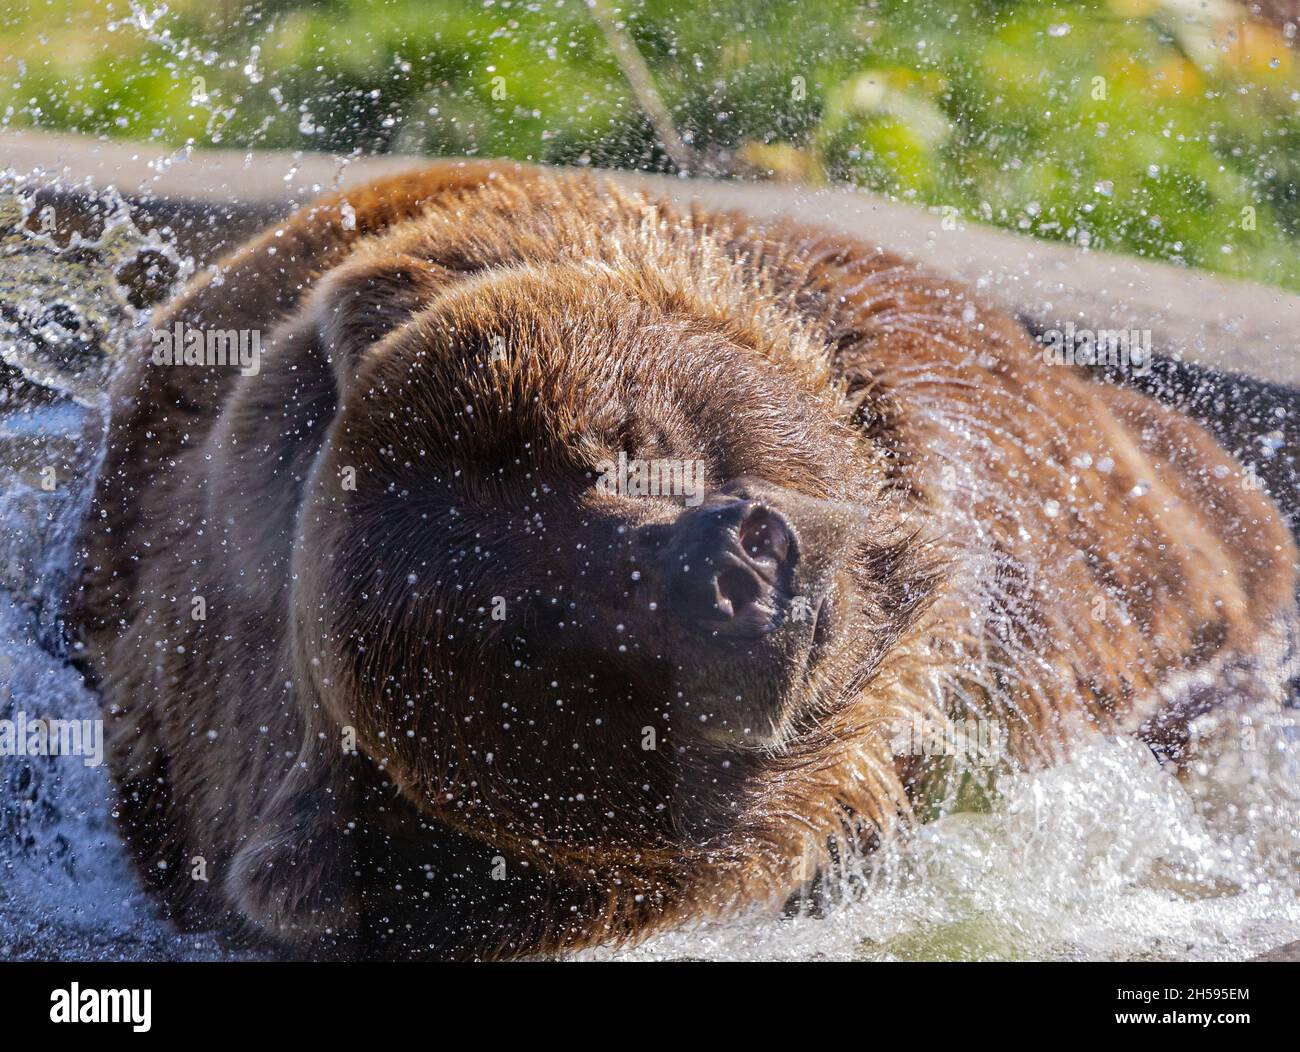 Ein Braunbär spielt im Wasser. Genießen Sie die Sonne an heißen Tagen im Wasser. Reisefoto, selektiver Fokus, keine Menschen, Konzeptfoto wilde Anim Stockfoto